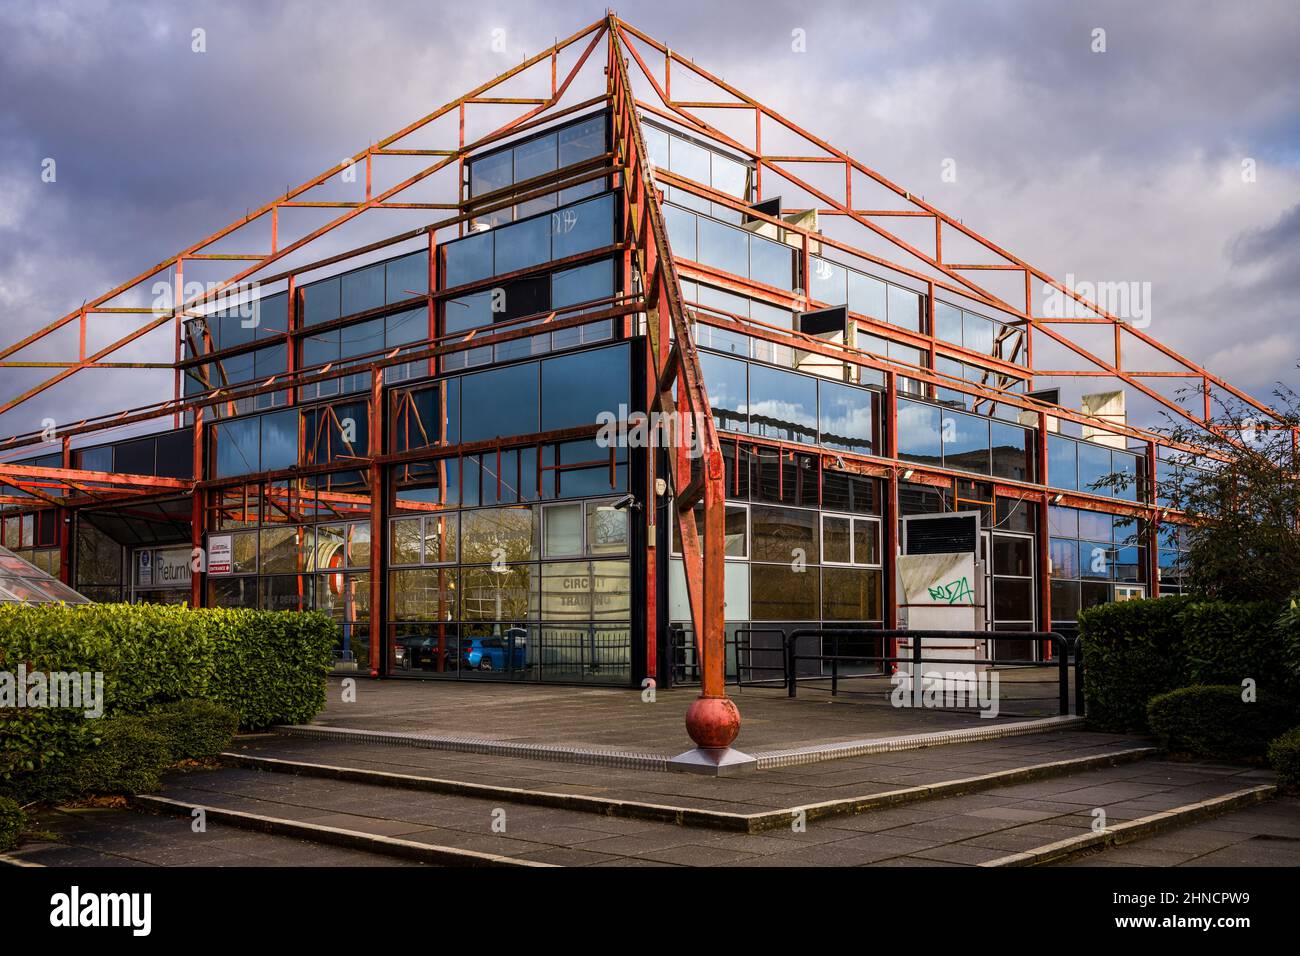 The Point Milton Keynes - Großbritanniens erstes Multiplex-Kino. MK Wahrzeichen. Geschlossen, Abriss ausstehend. Architects Building Design Partnership BDP 1985. Stockfoto